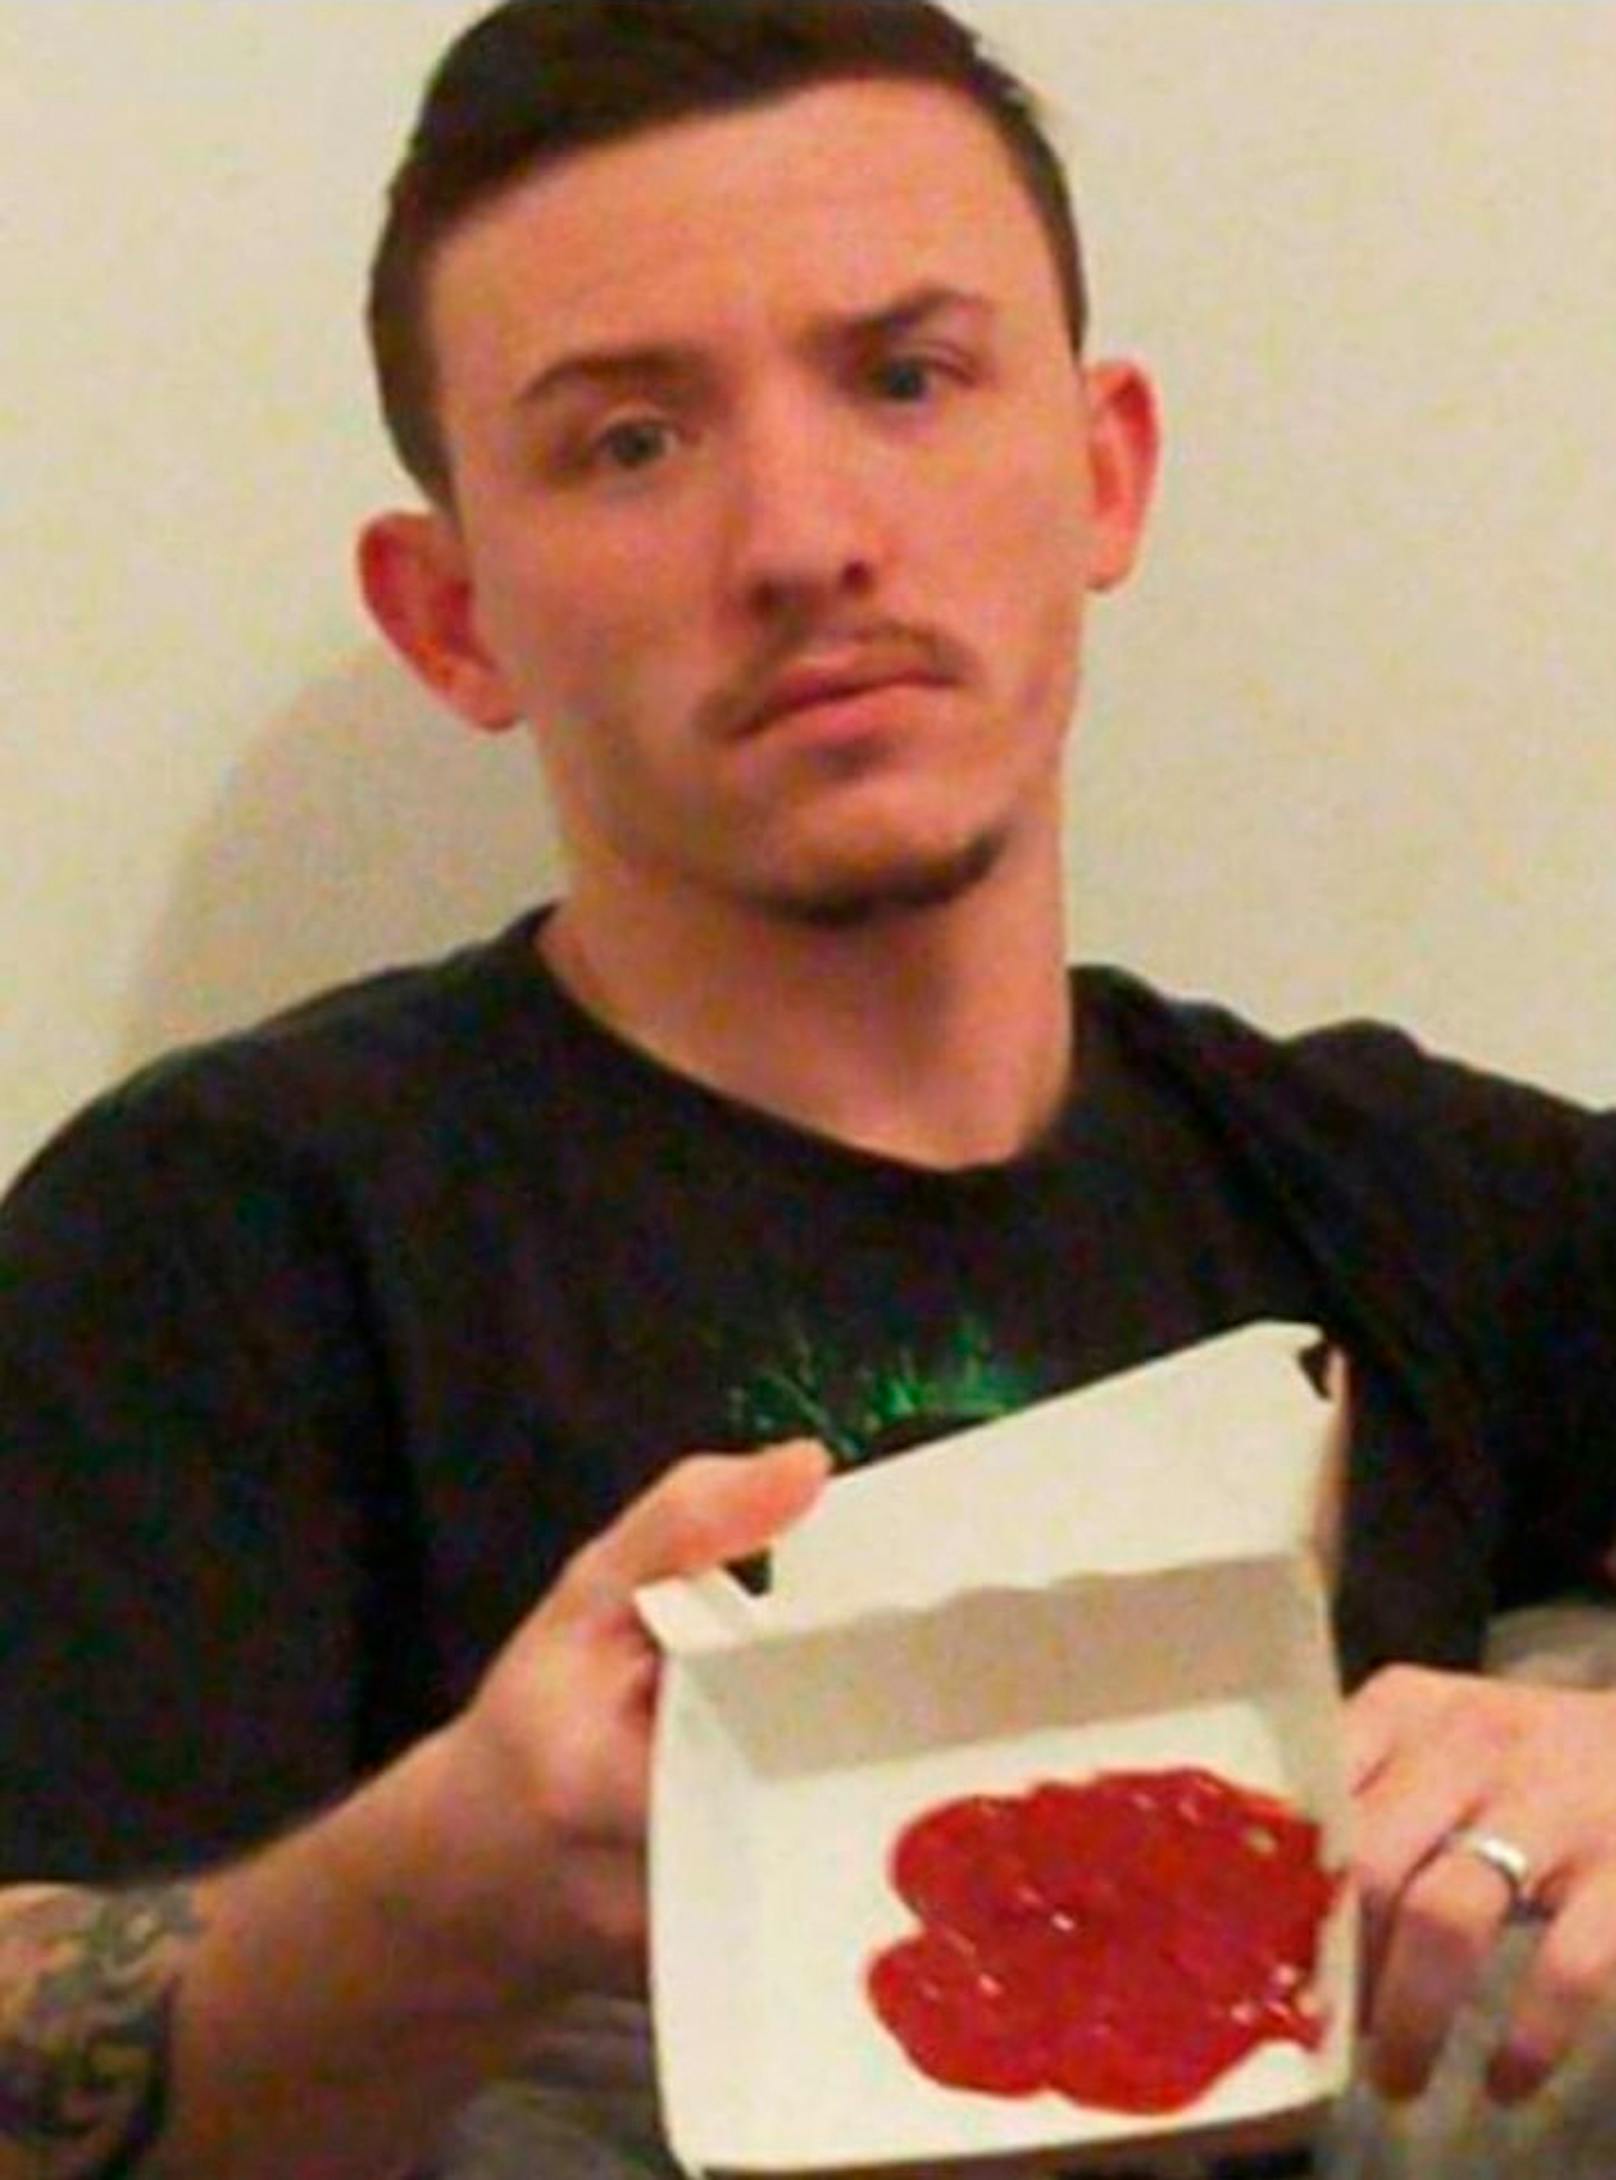 Als Lewis die Burger-Schachtel öffnete, erlebte er eine böse Überraschung: darin war nur Ketchup